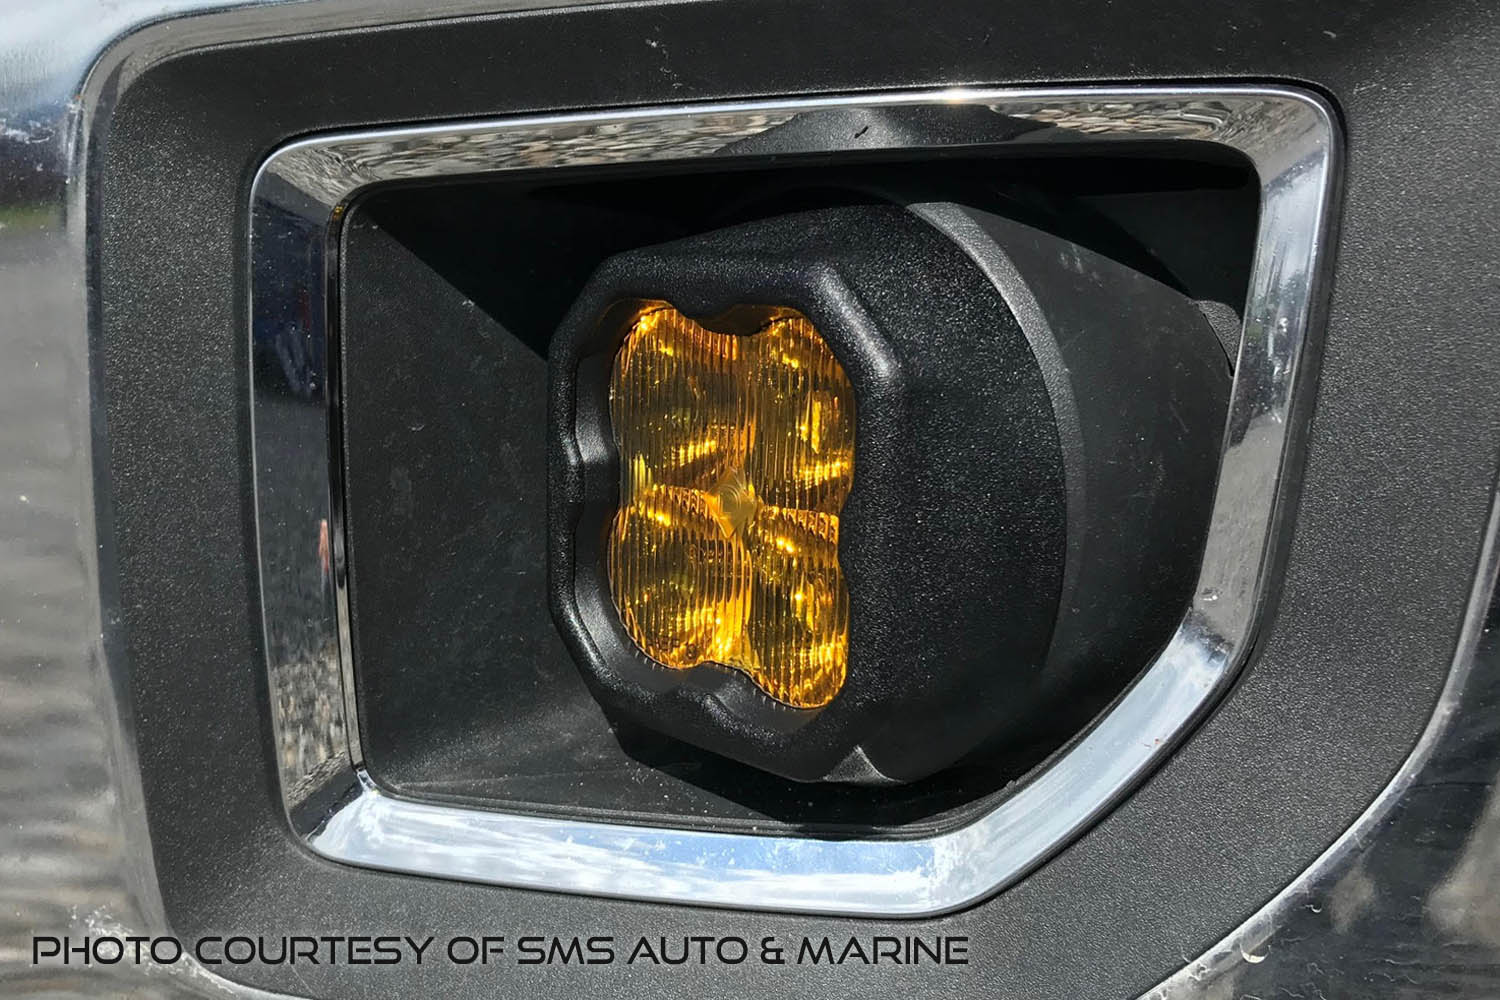 SS3 LED Fog Light Kit for 2012-2018 Chevrolet Sonic Diode Dynamics-